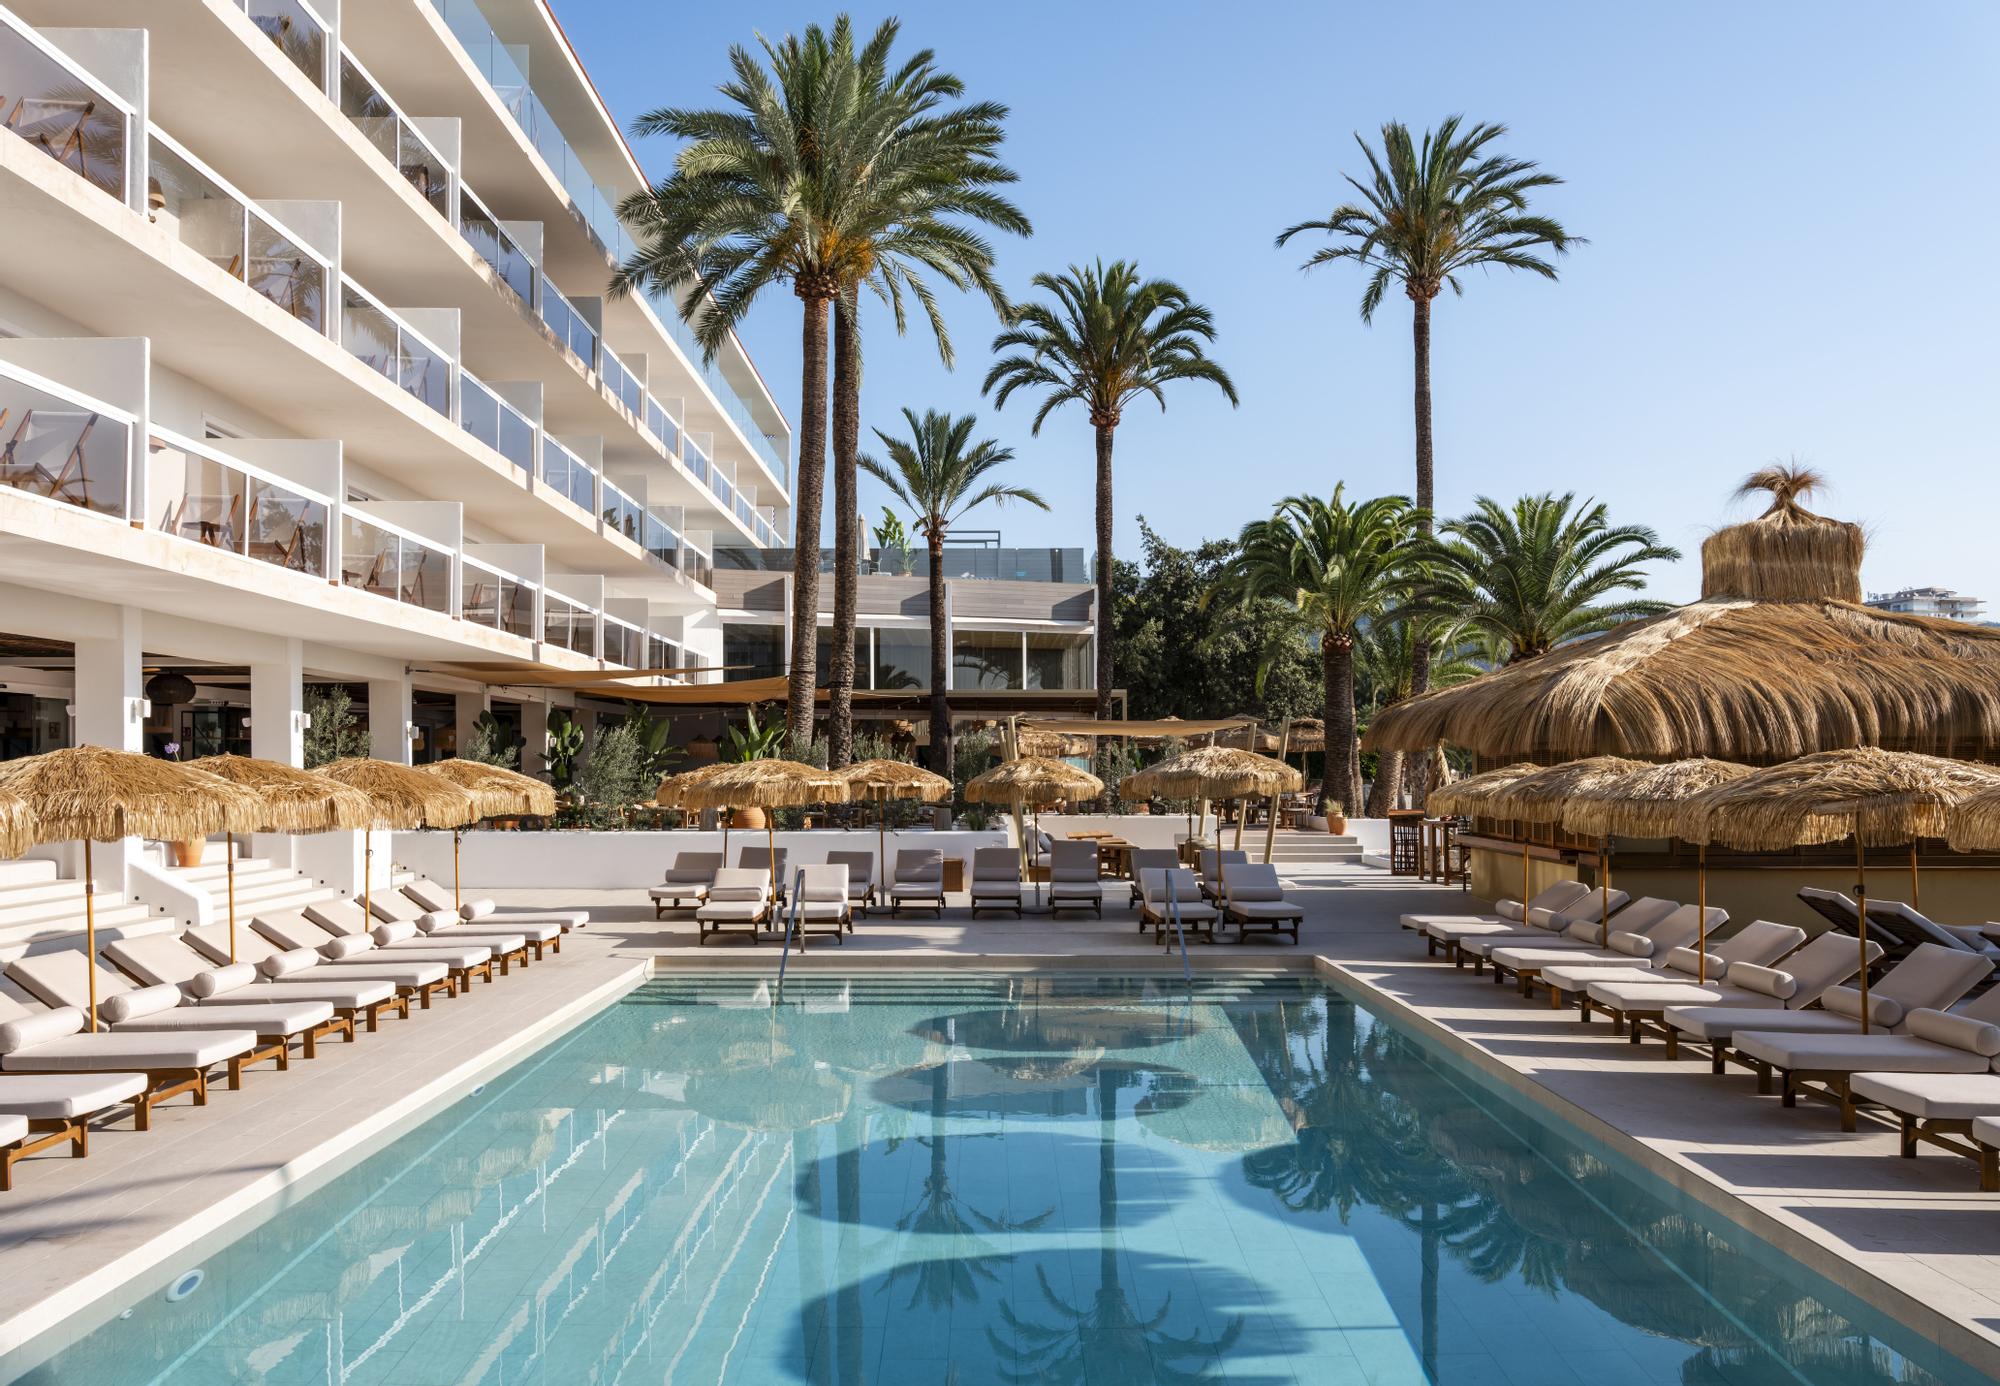 Beso Beach wird Ihnen vom Hotel Zel Mallorca vorgestellt.